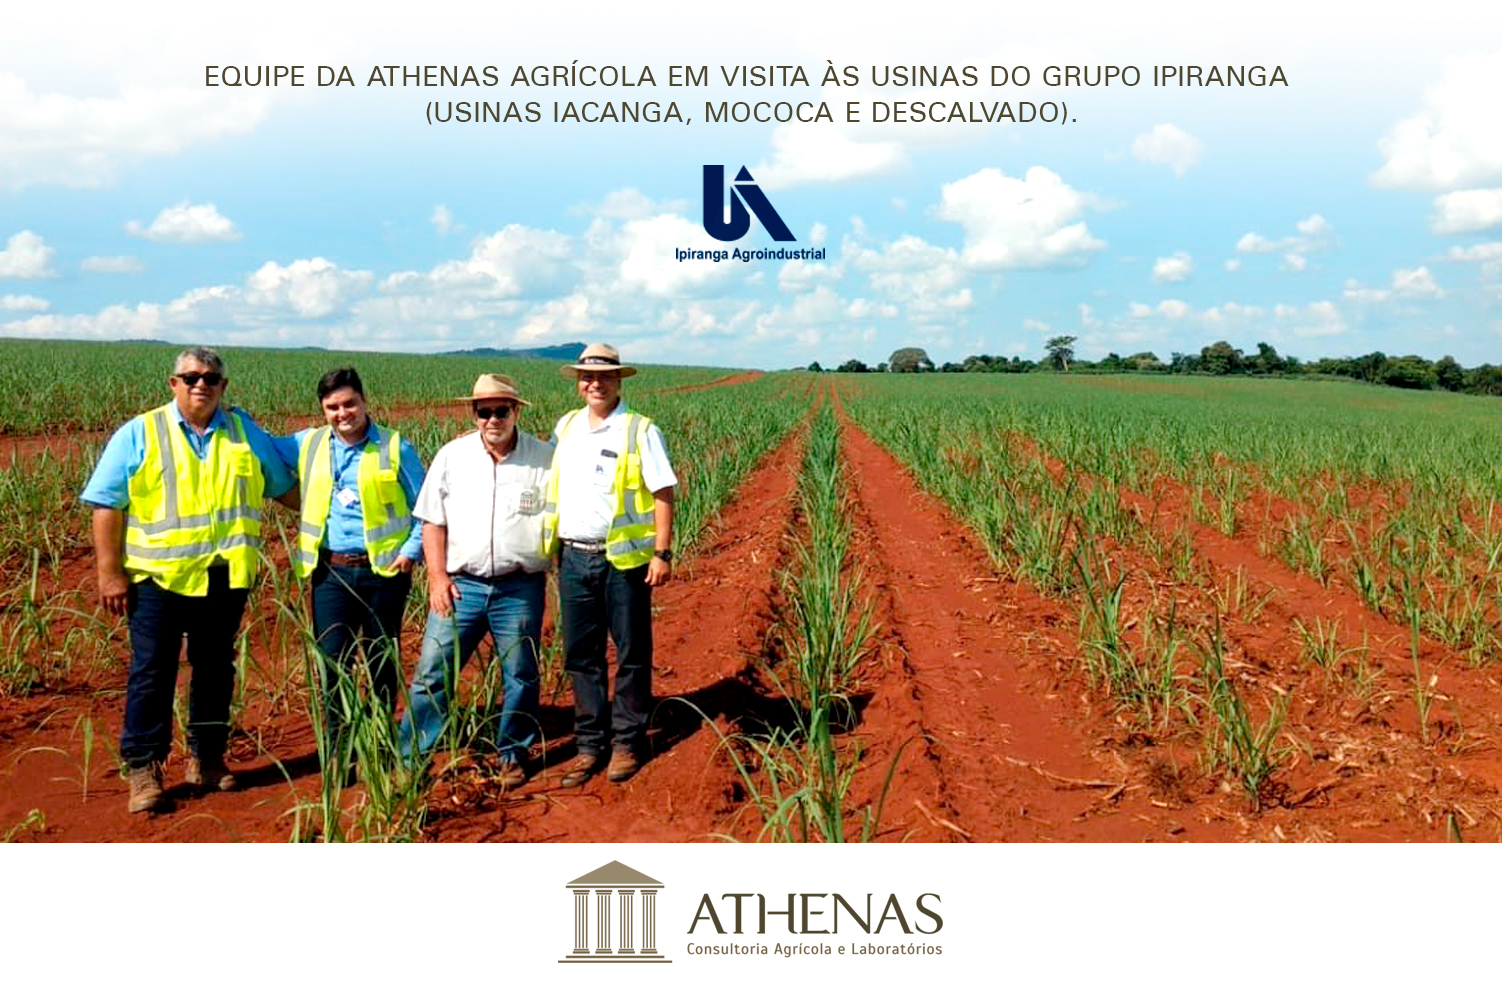 Equipe Athenas realiza visita técnica às Usinas do Grupo Ipiranga